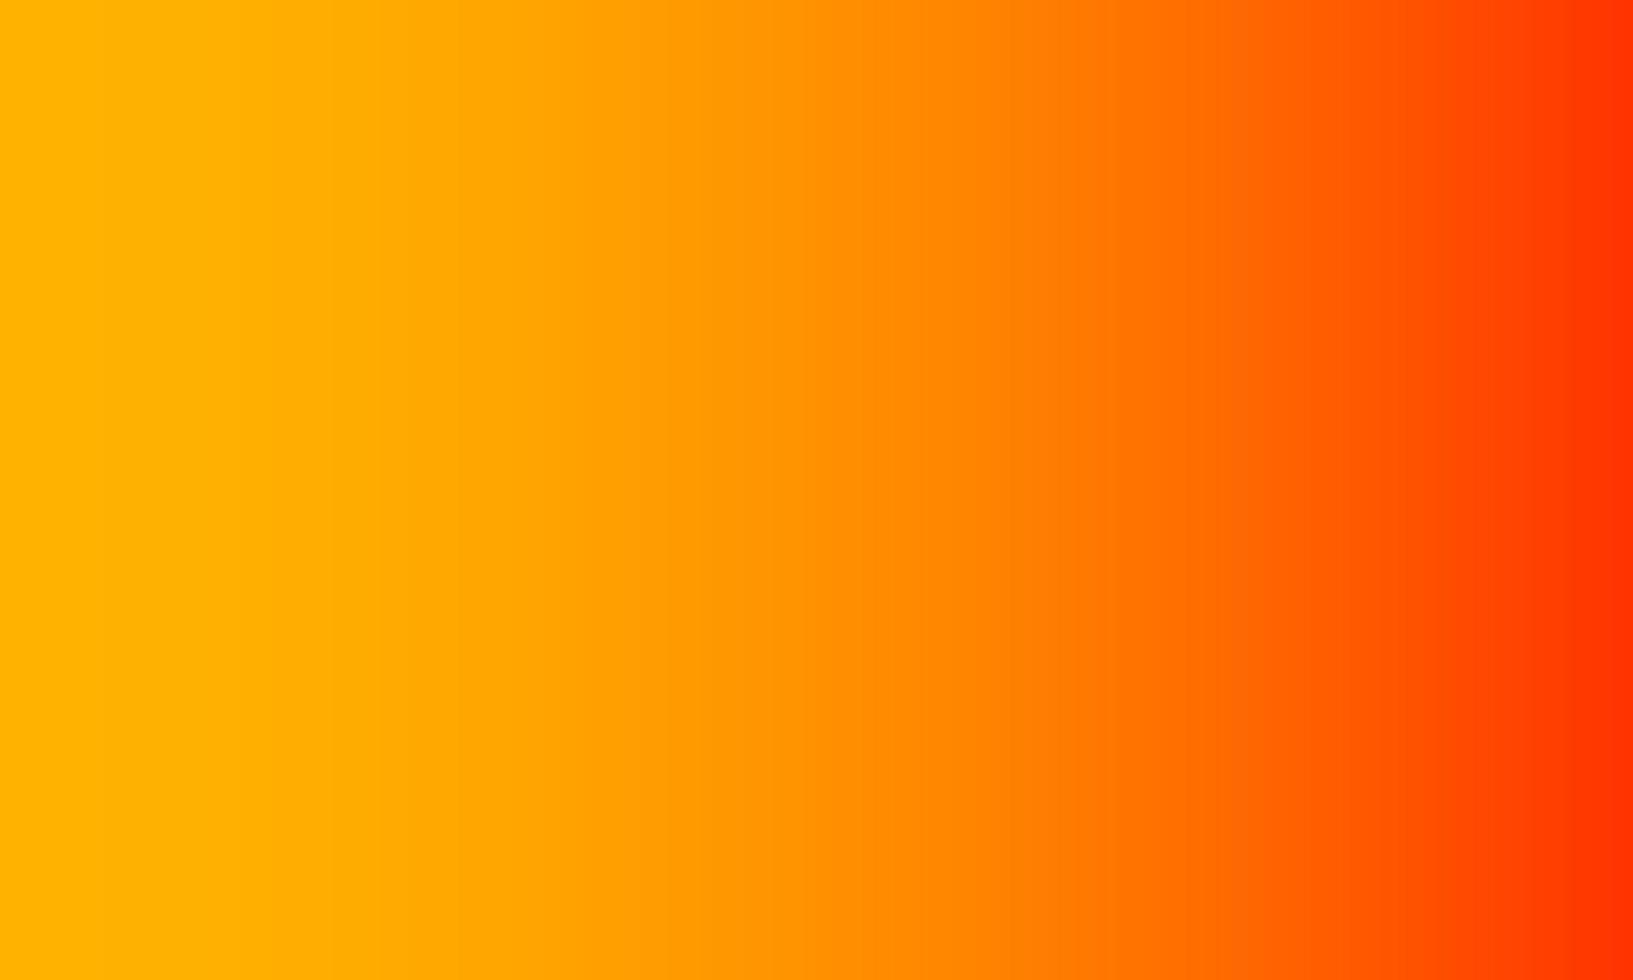 fondo degradado. naranja y naranja oscuro. estilo abstracto, sencillo, alegre y limpio. adecuado para copiar espacio, papel tapiz, fondo, pancarta, volante o decoración vector